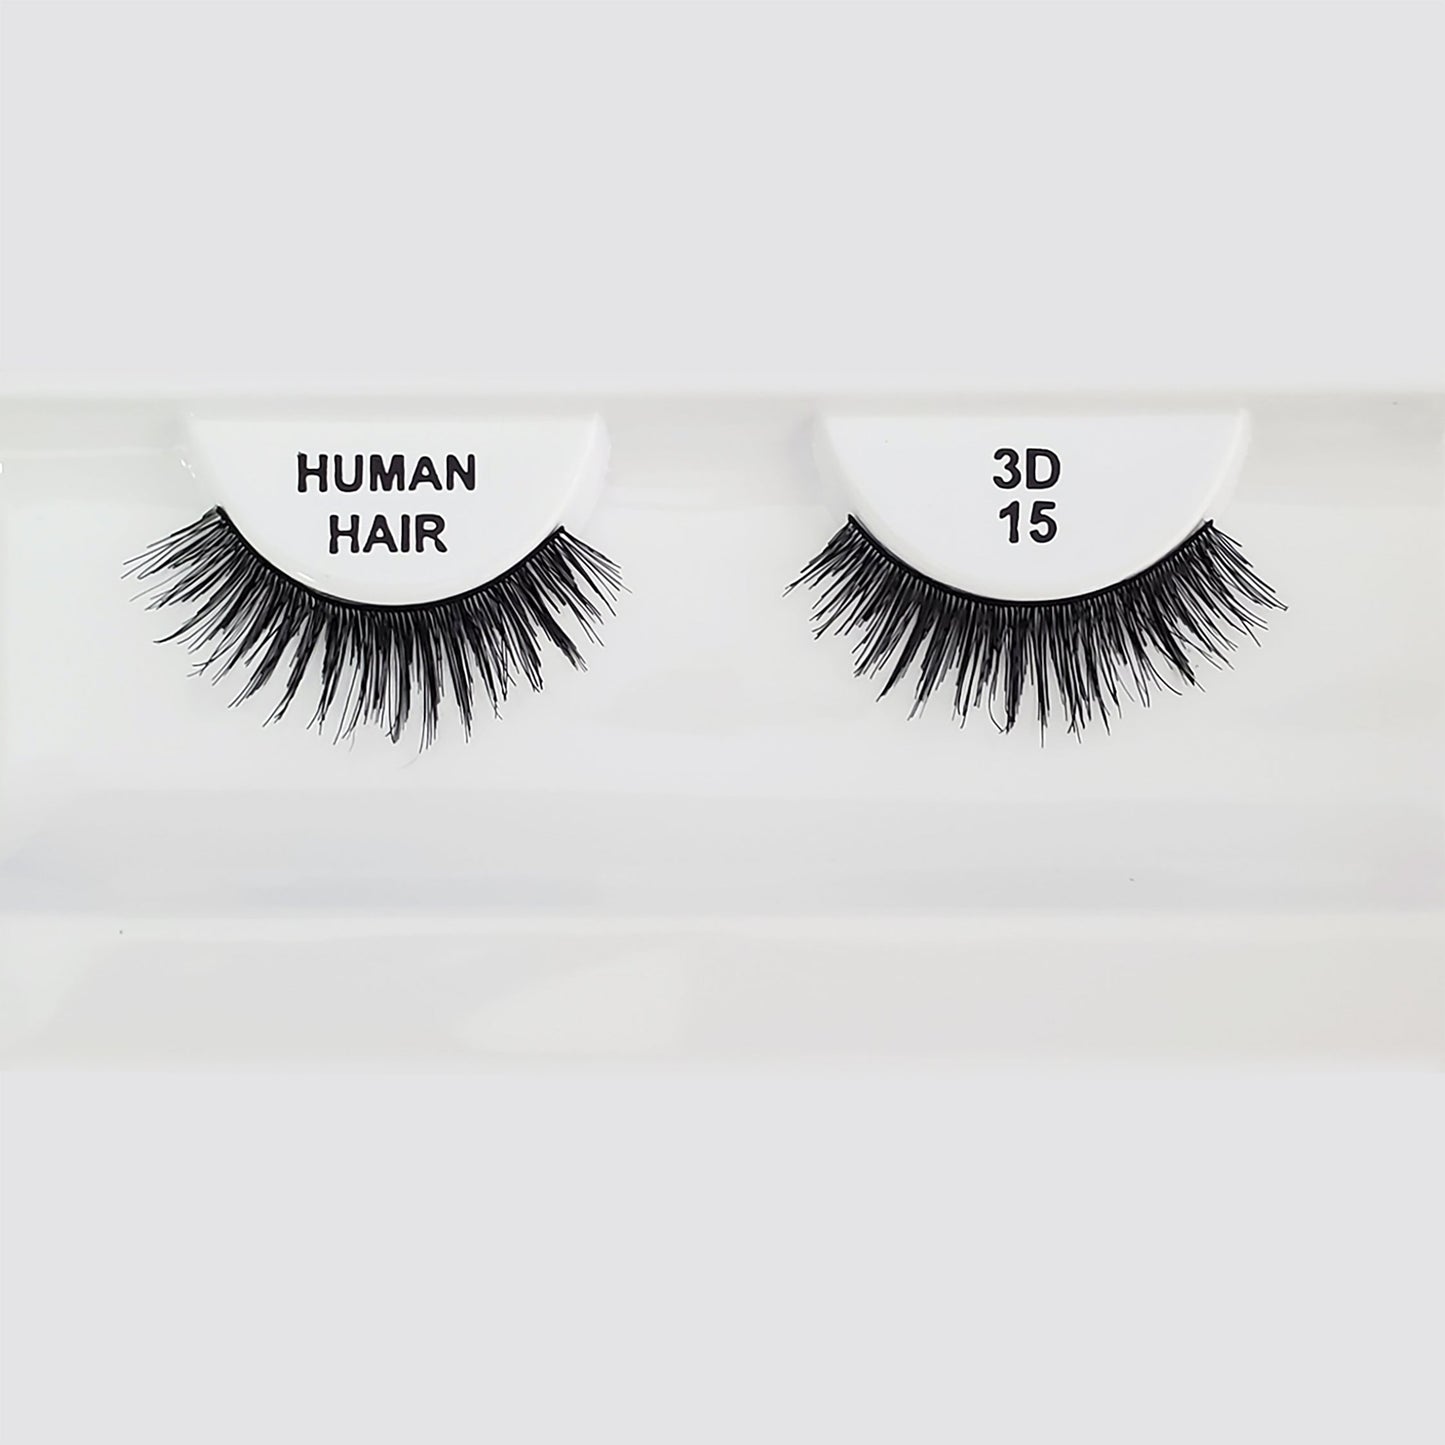 #3D 15 - 100% Human Remy Hair Eyelash